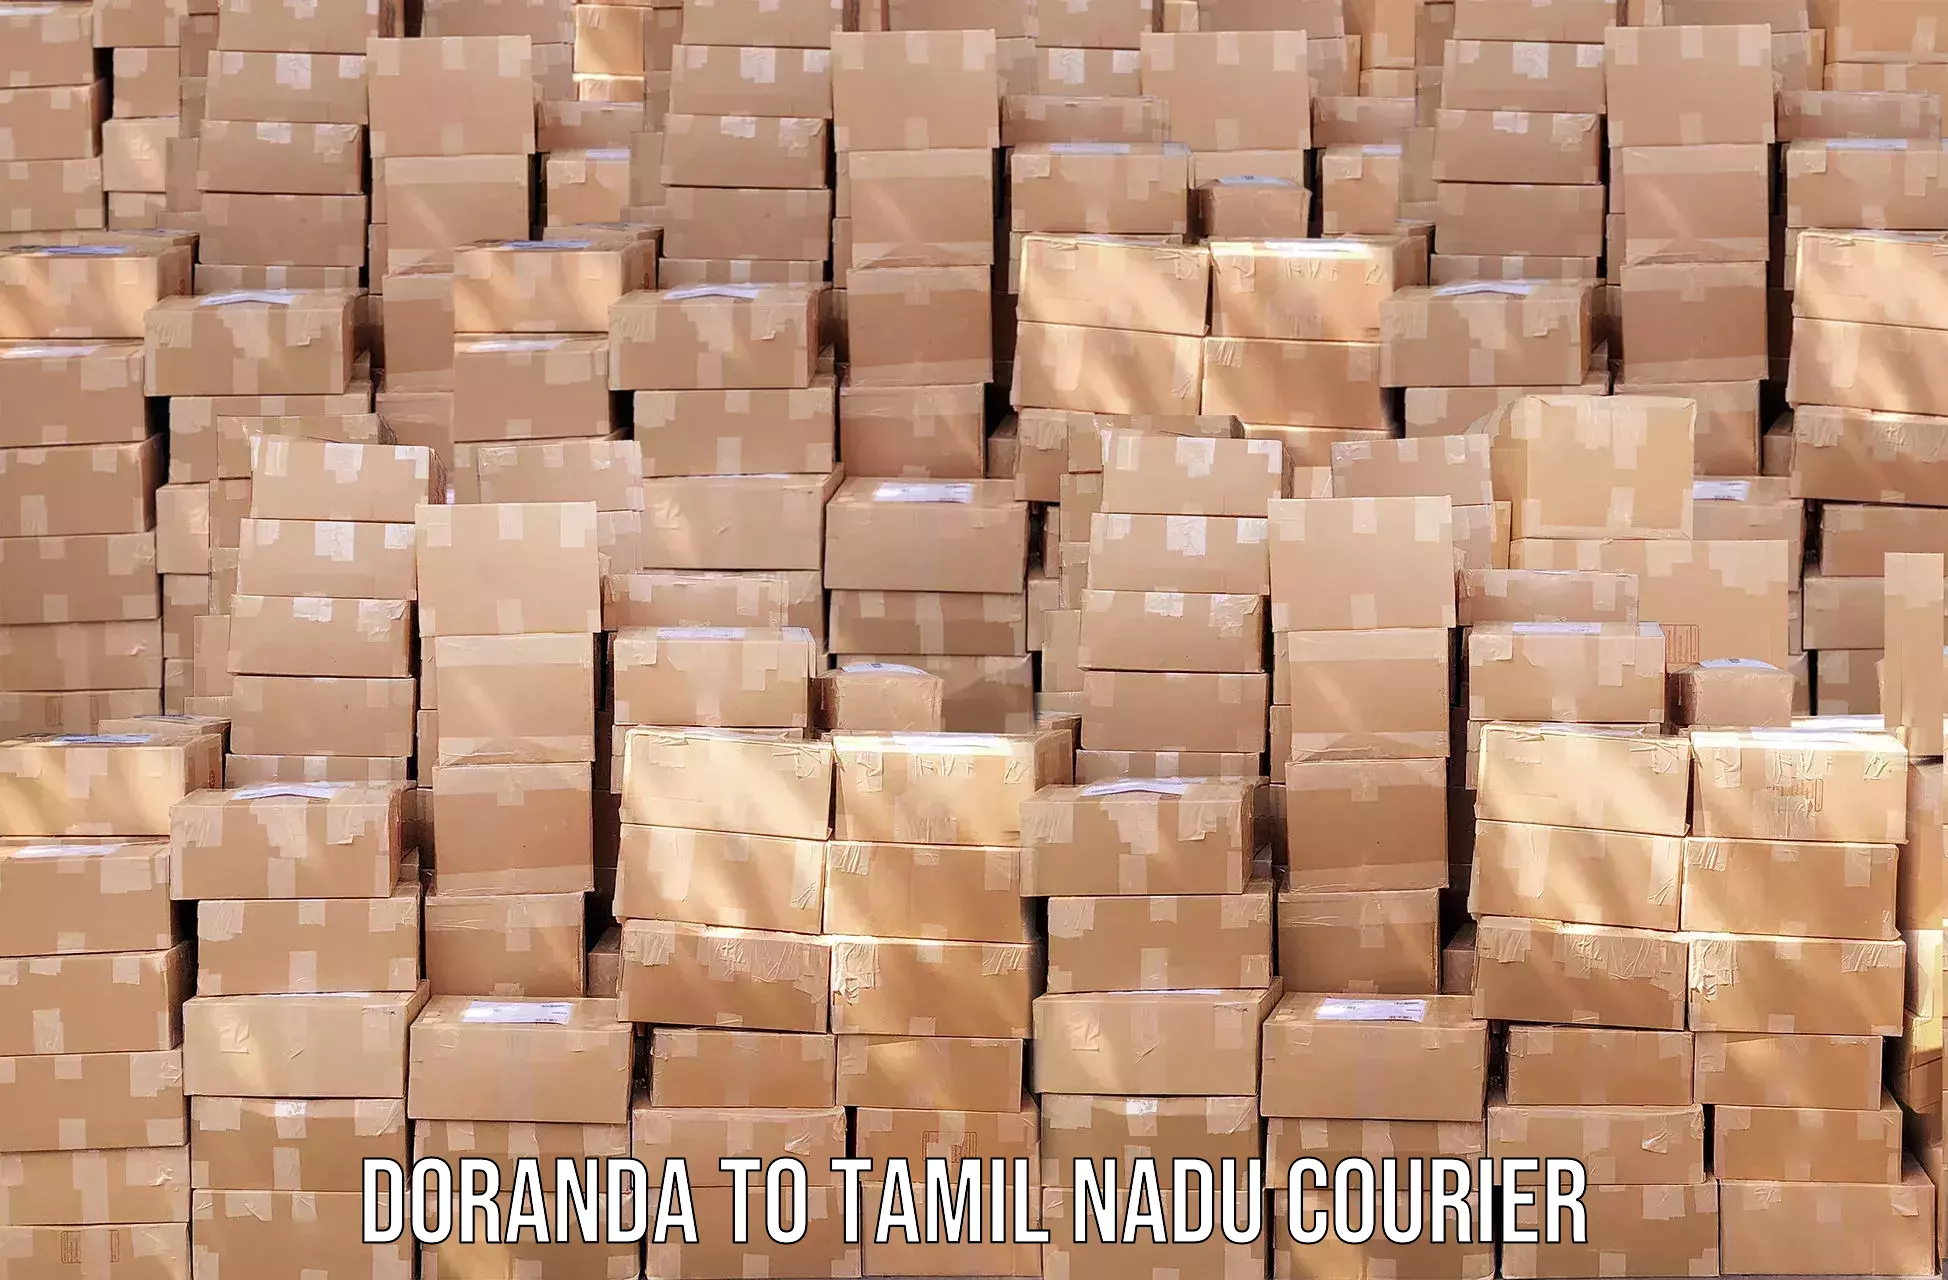 Digital courier platforms Doranda to Rameswaram